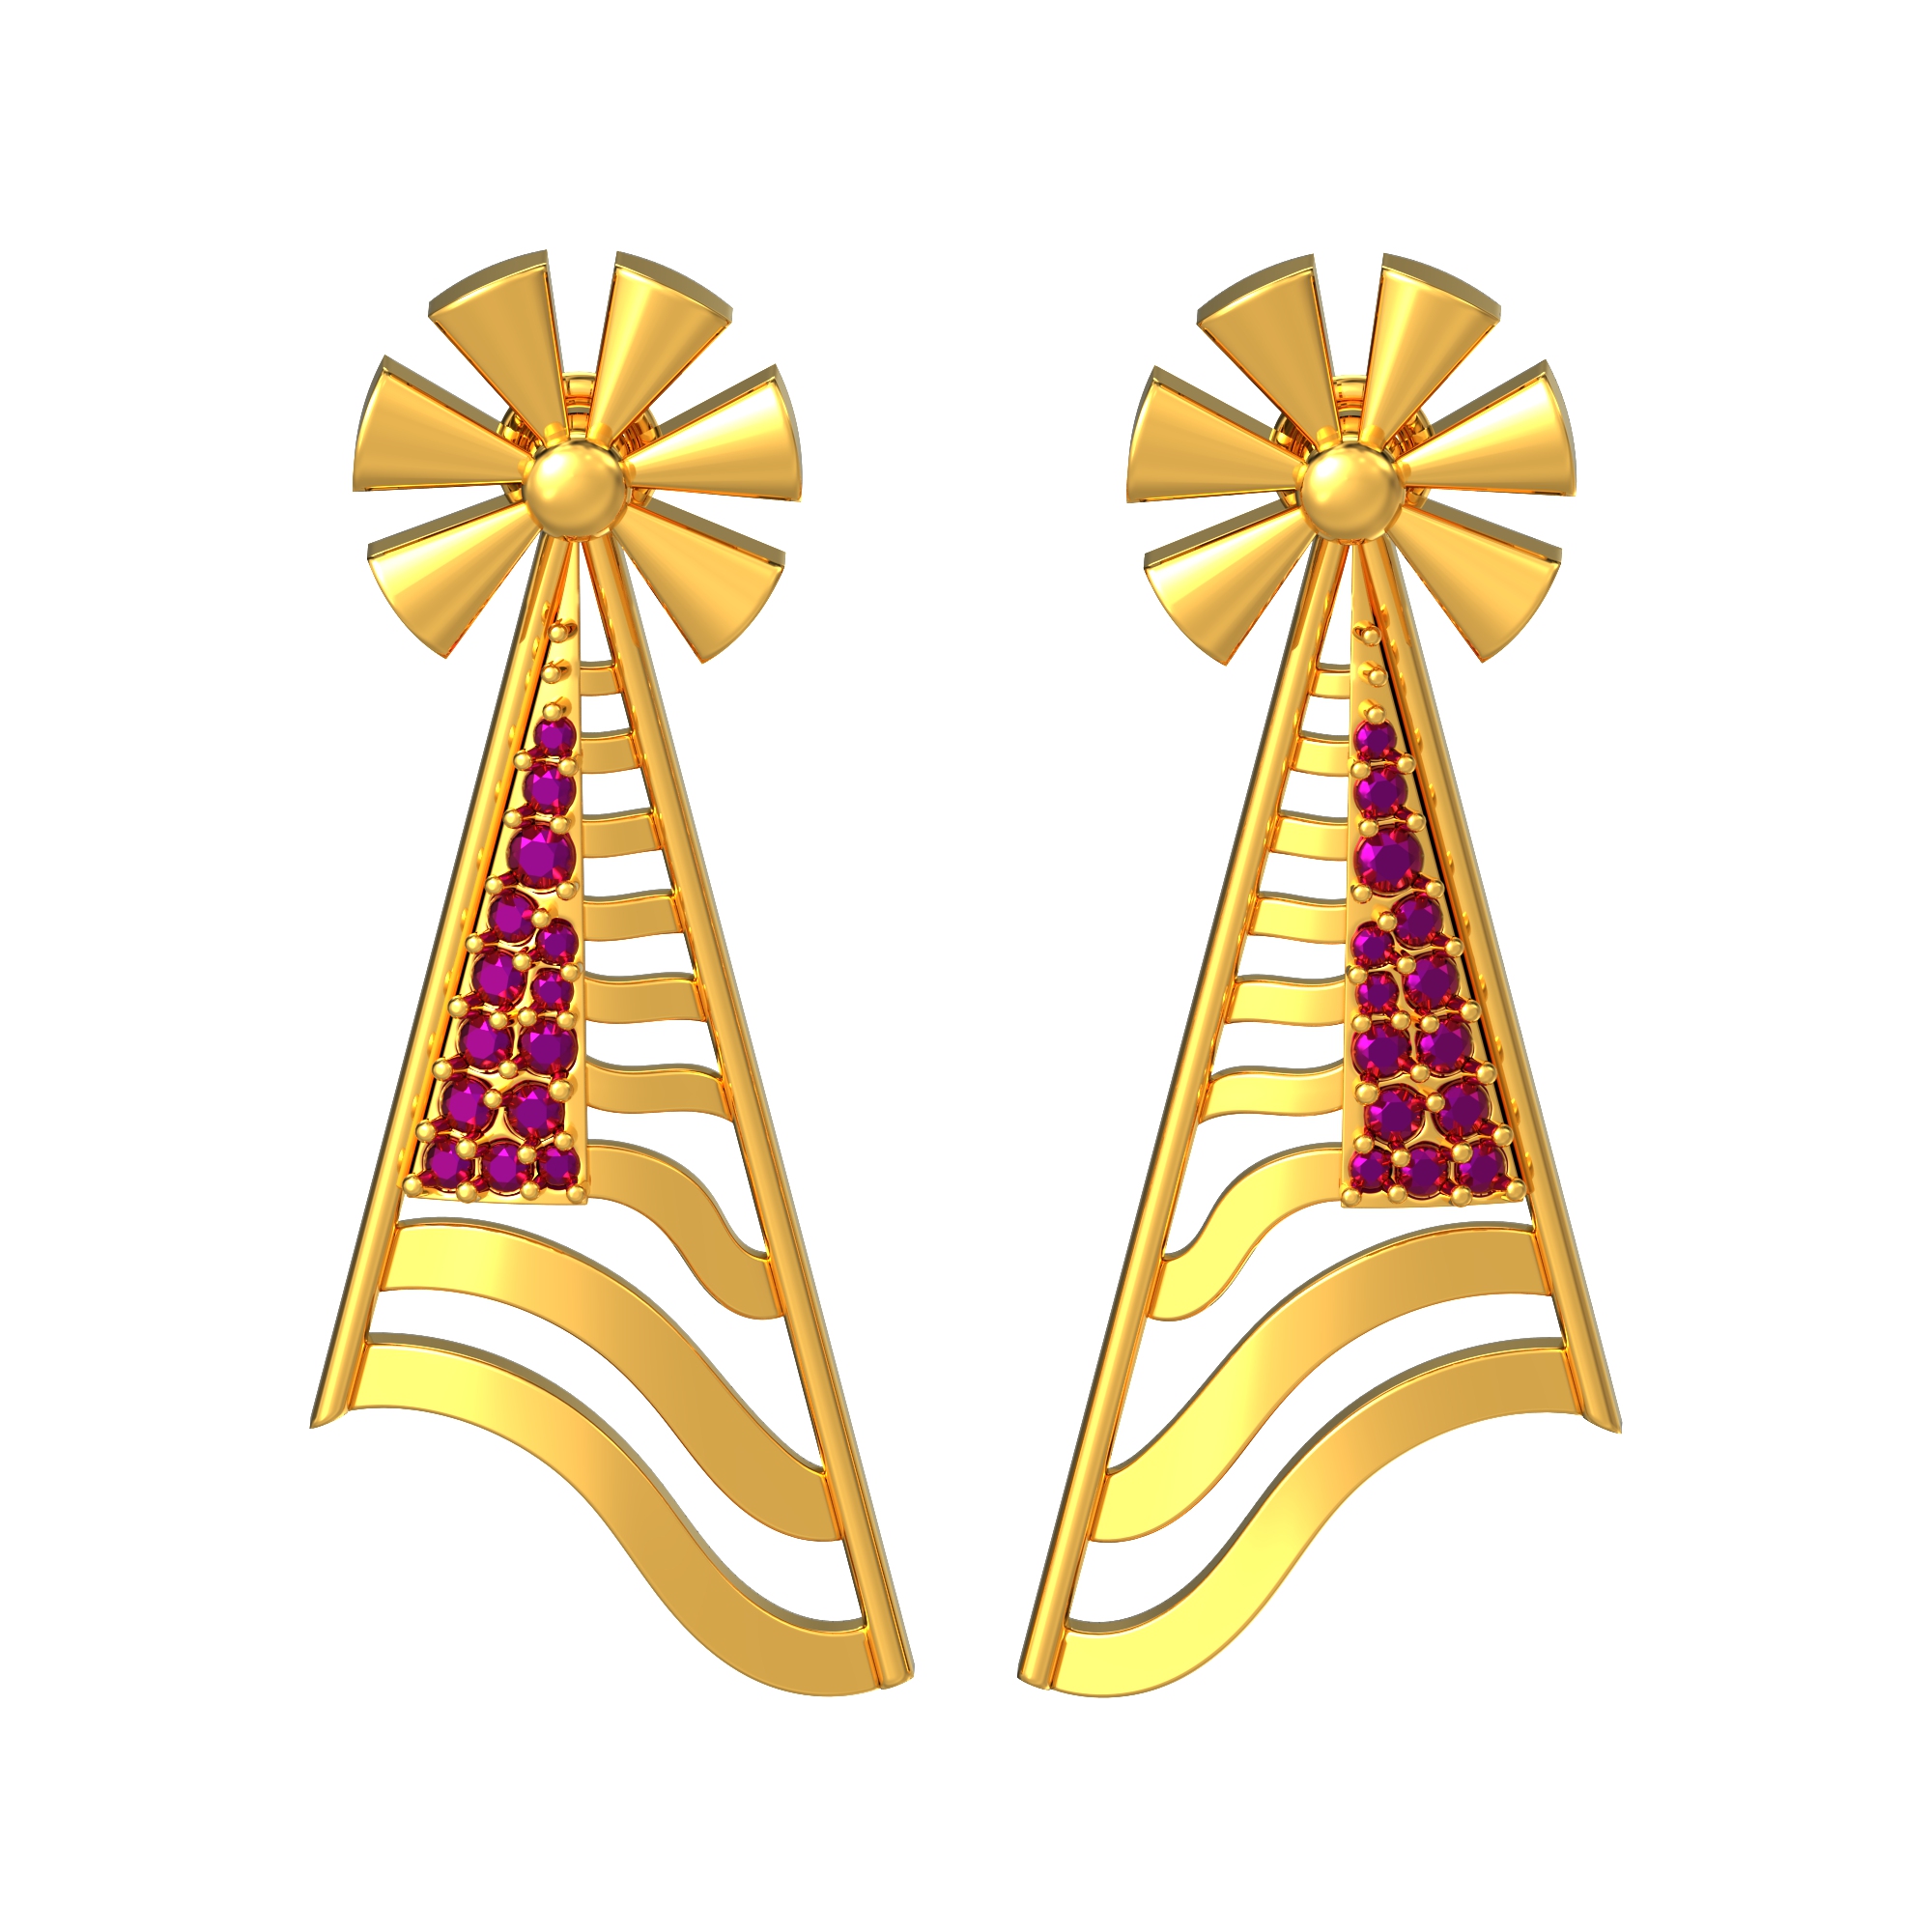 Windmill Design Gold Earrings Online